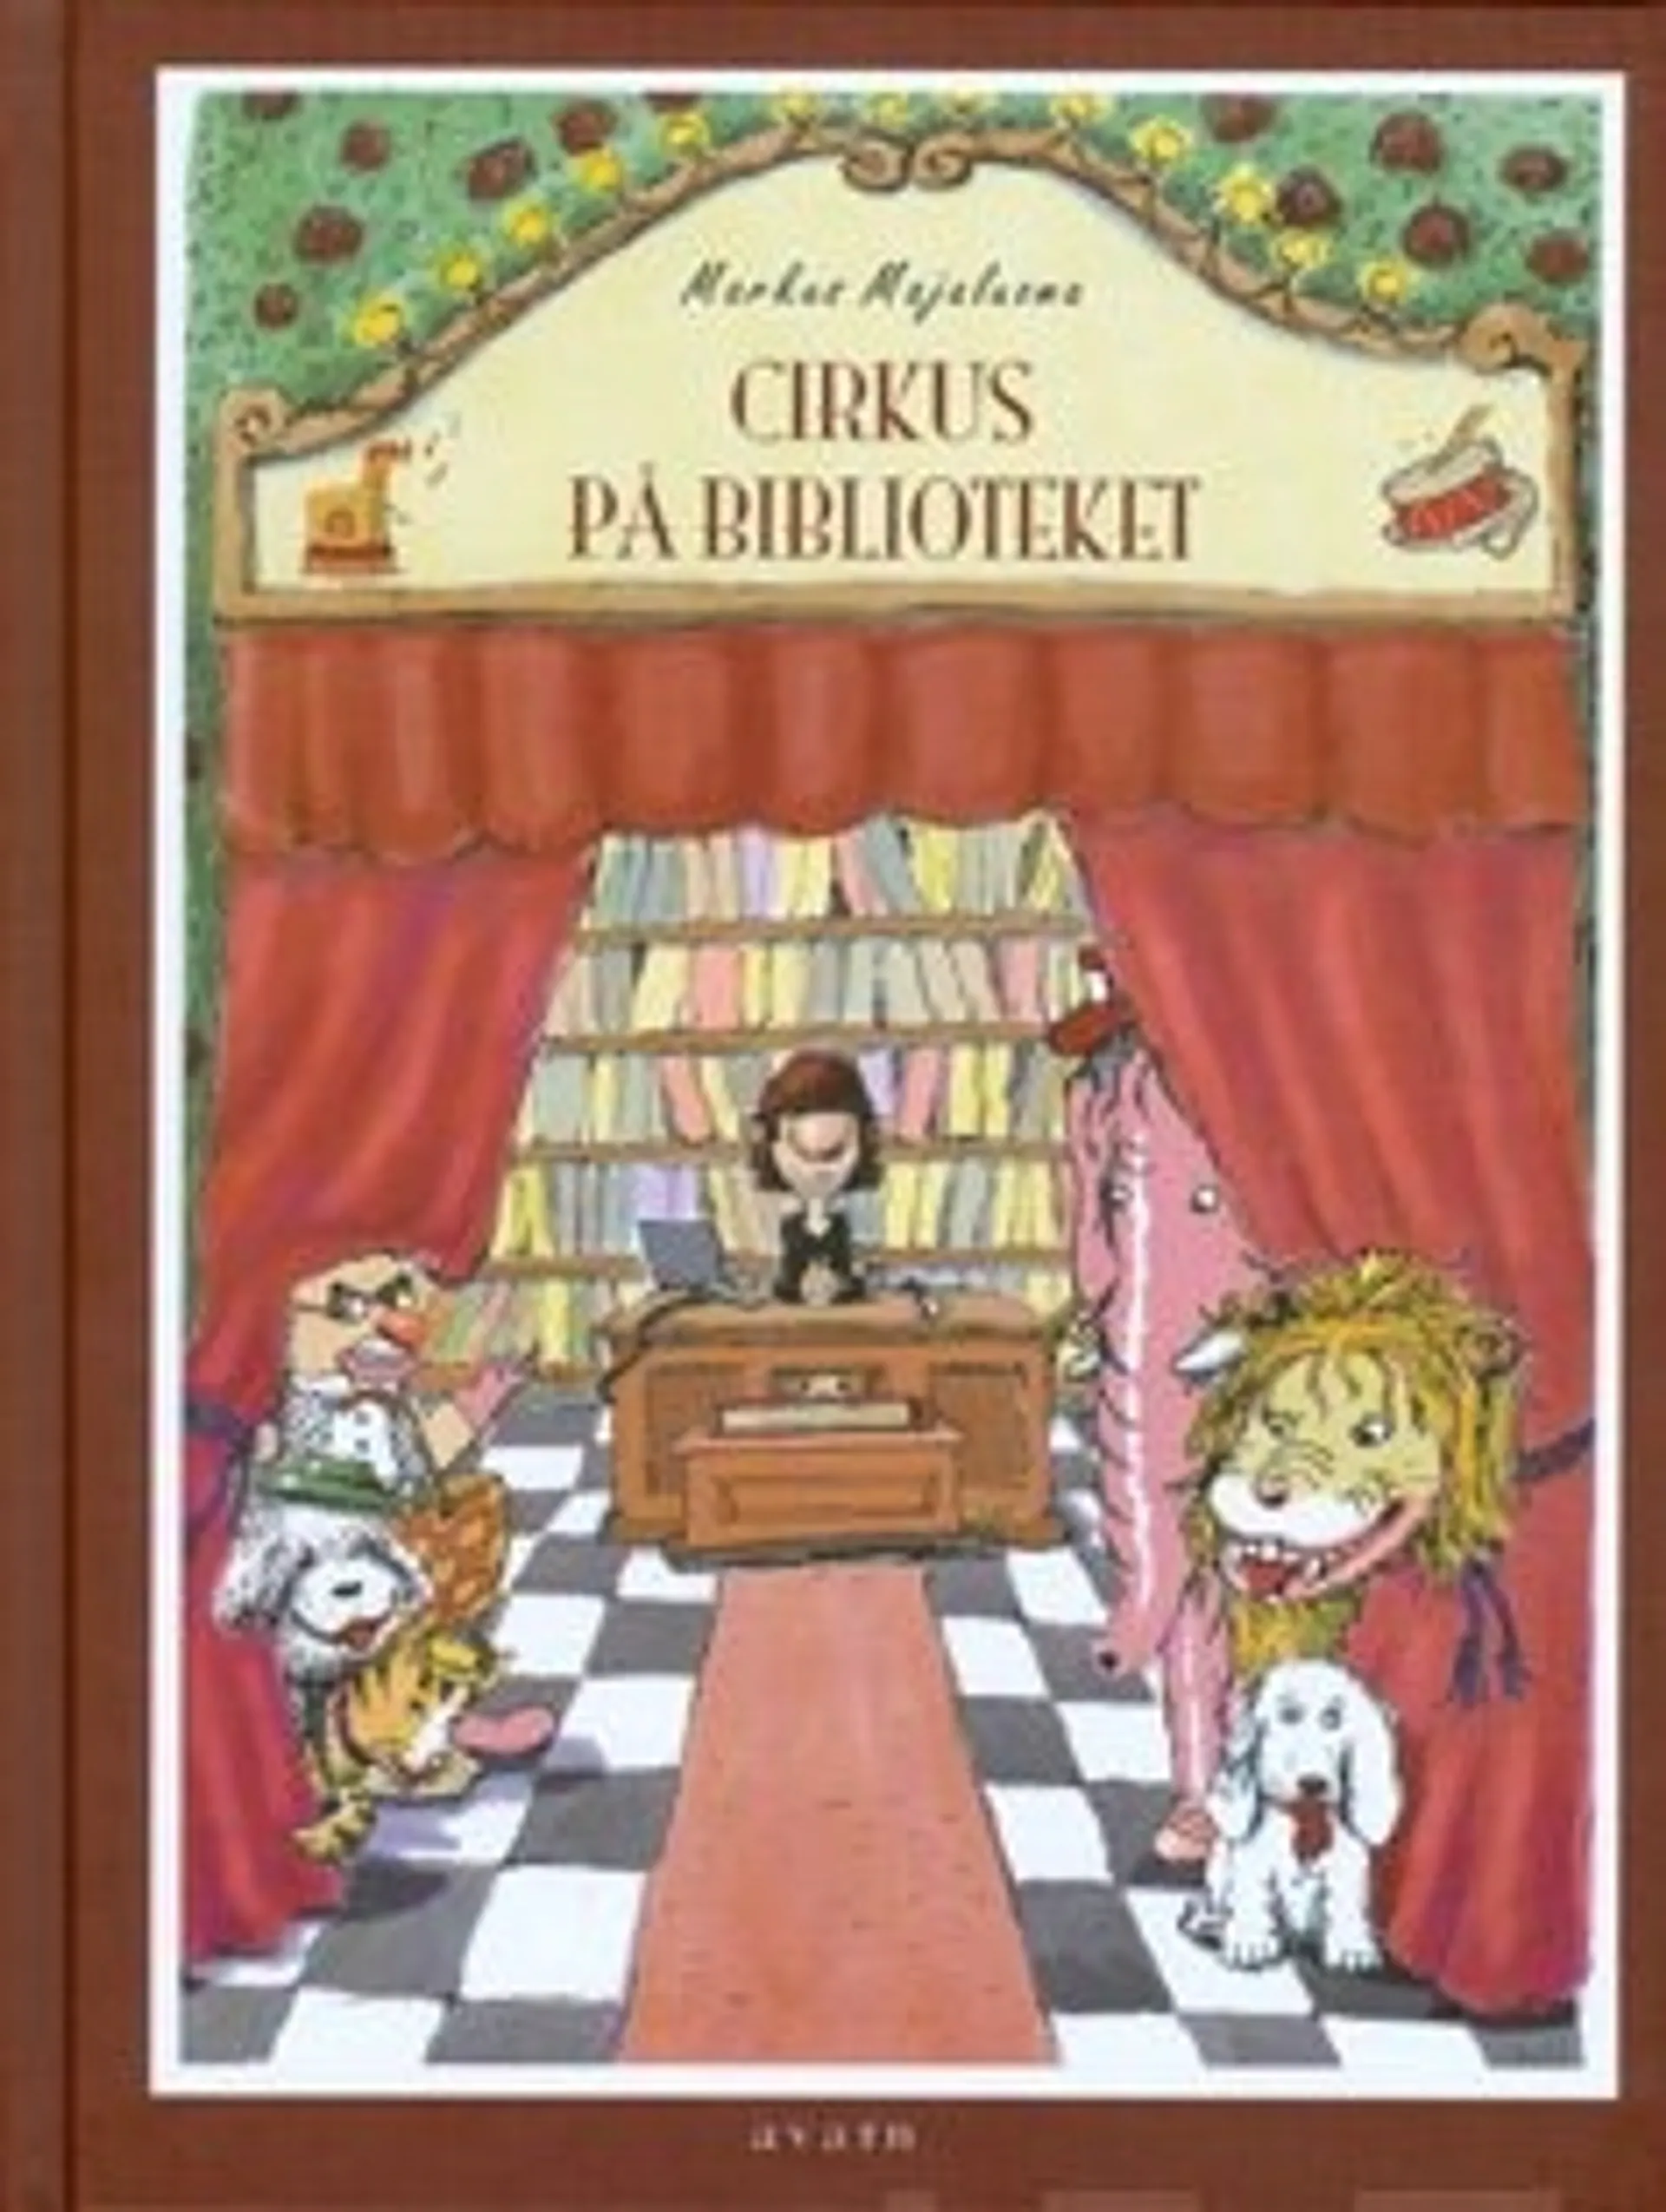 Cirkus på biblioteket